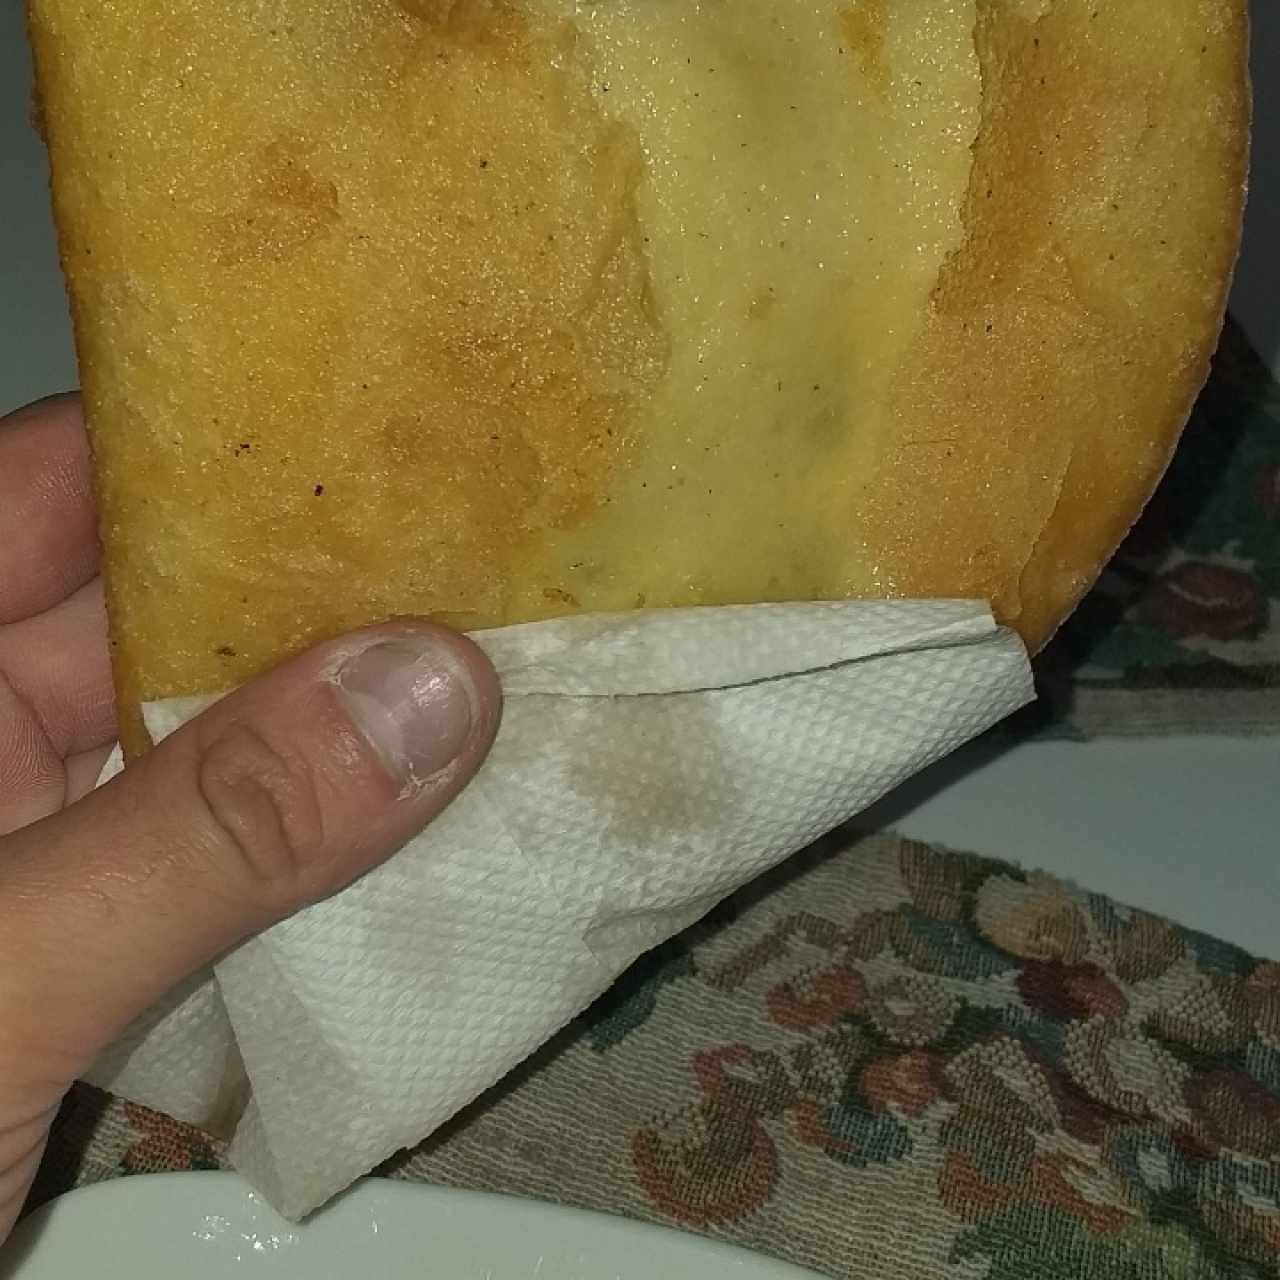 ¡¡imagínate el nivel del tamaño de la empanada!!